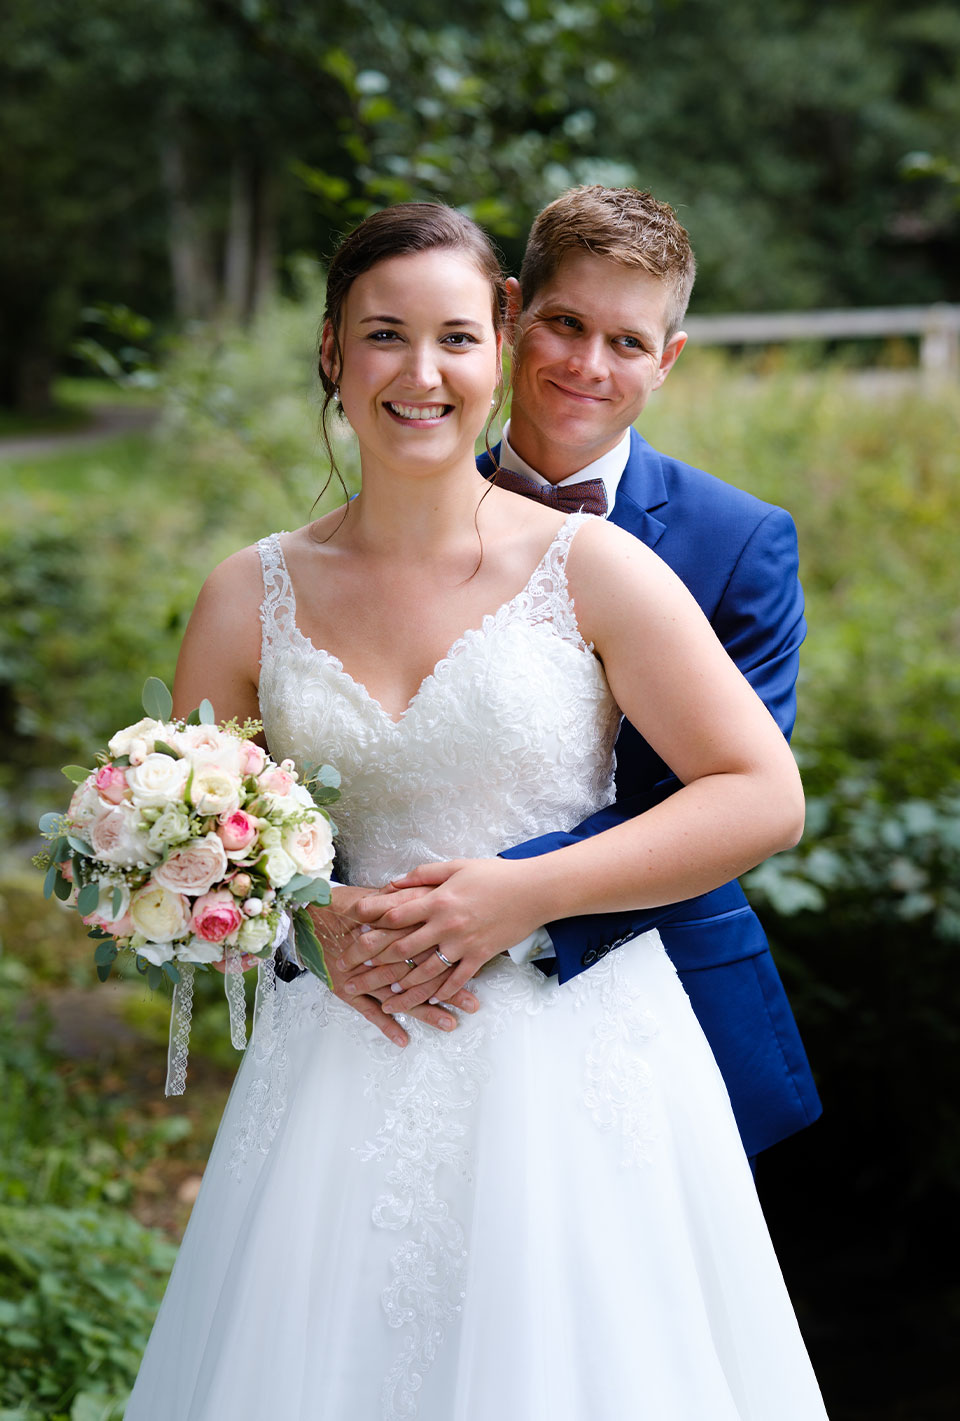 Brautpaar steht lächelnd im Freien, Braut hält Blumenstrauß.